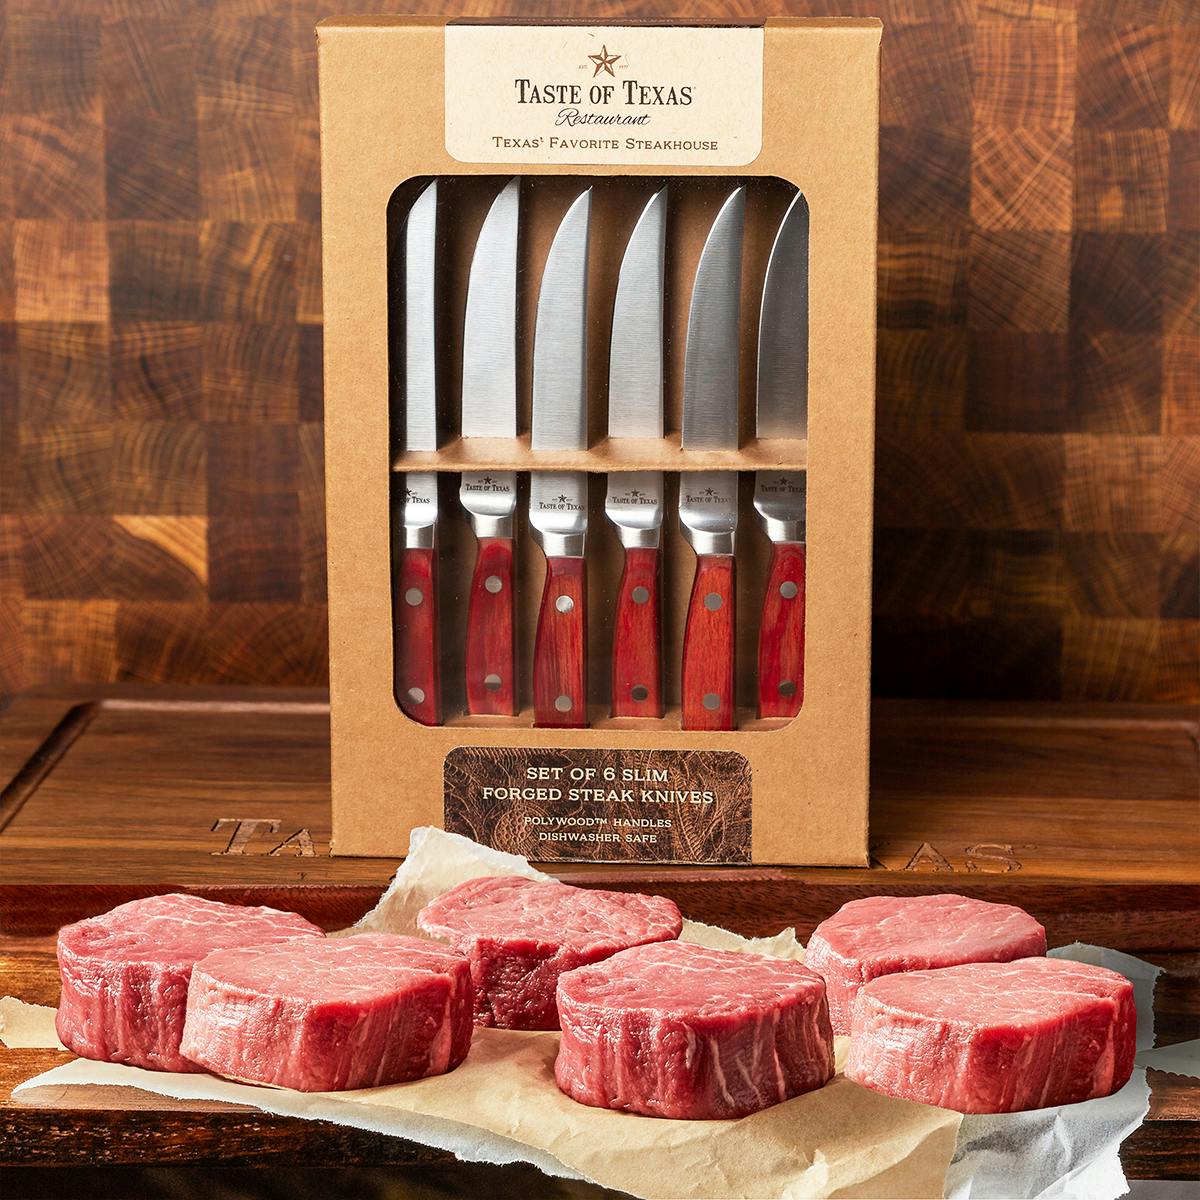 Taste of Texas - Filet Mignons + Steak Knives for 6